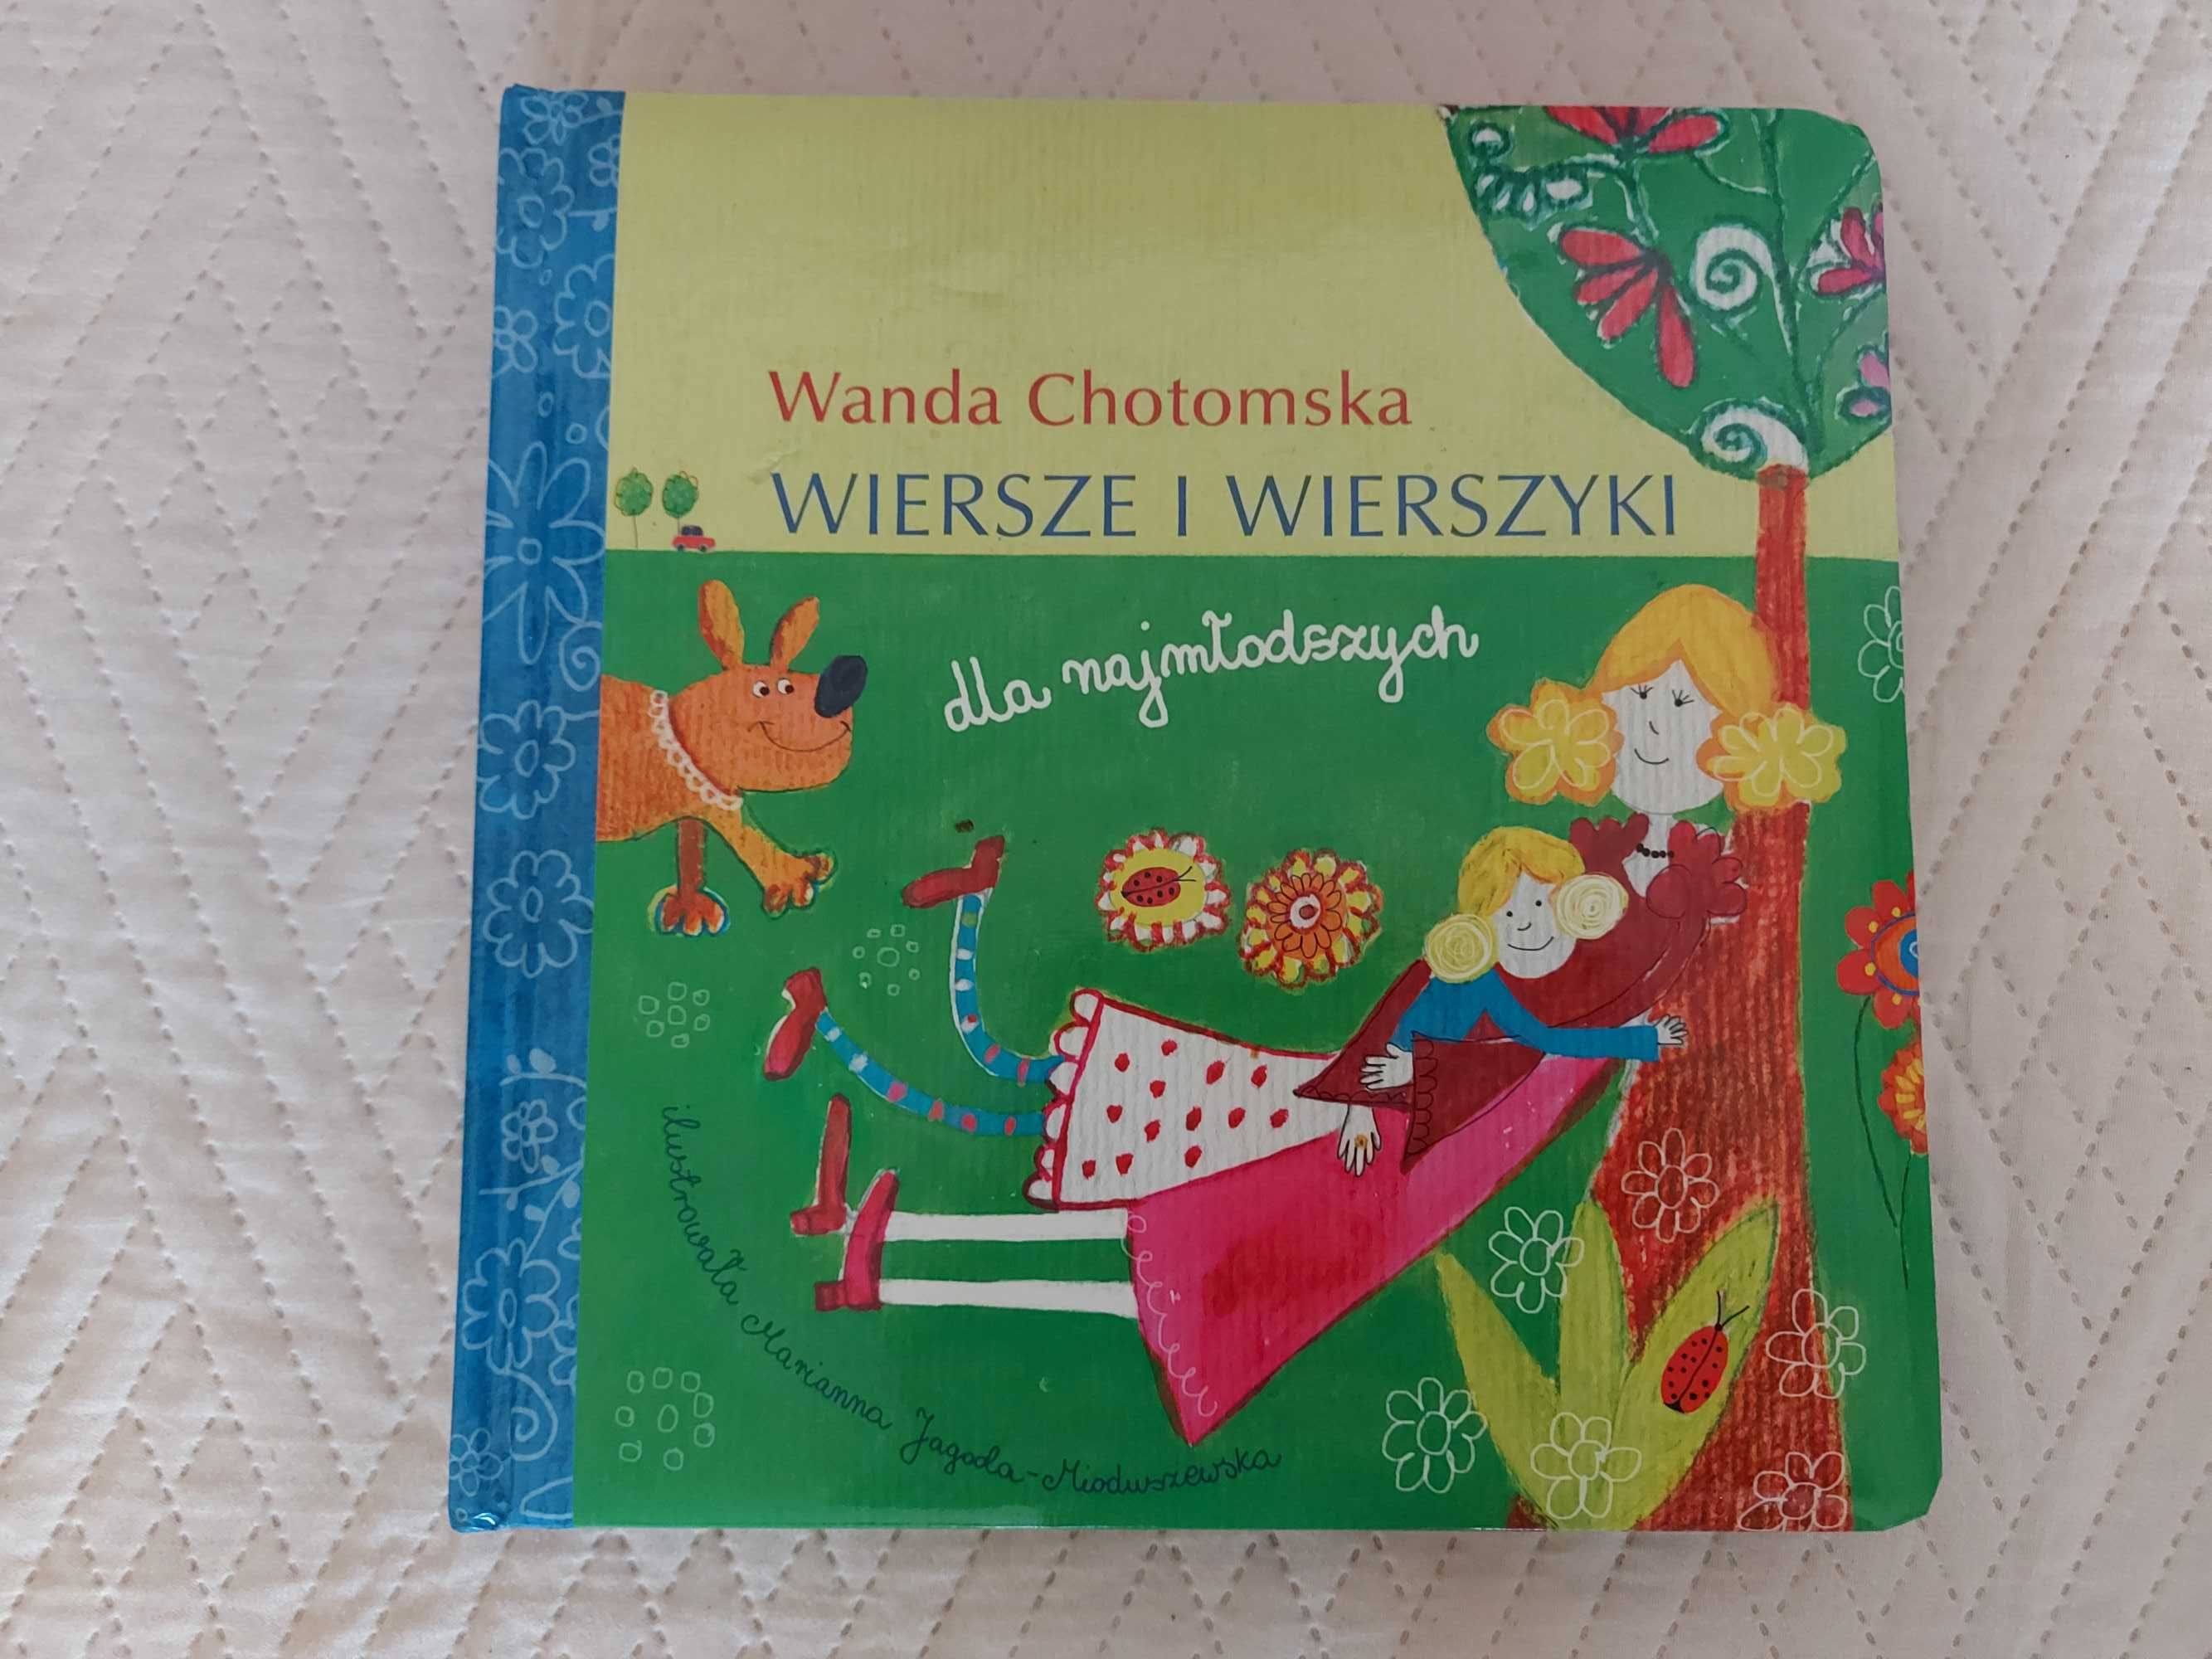 Wanda Chotomska wiersze i wierszyki - twarde strony - jak nowa